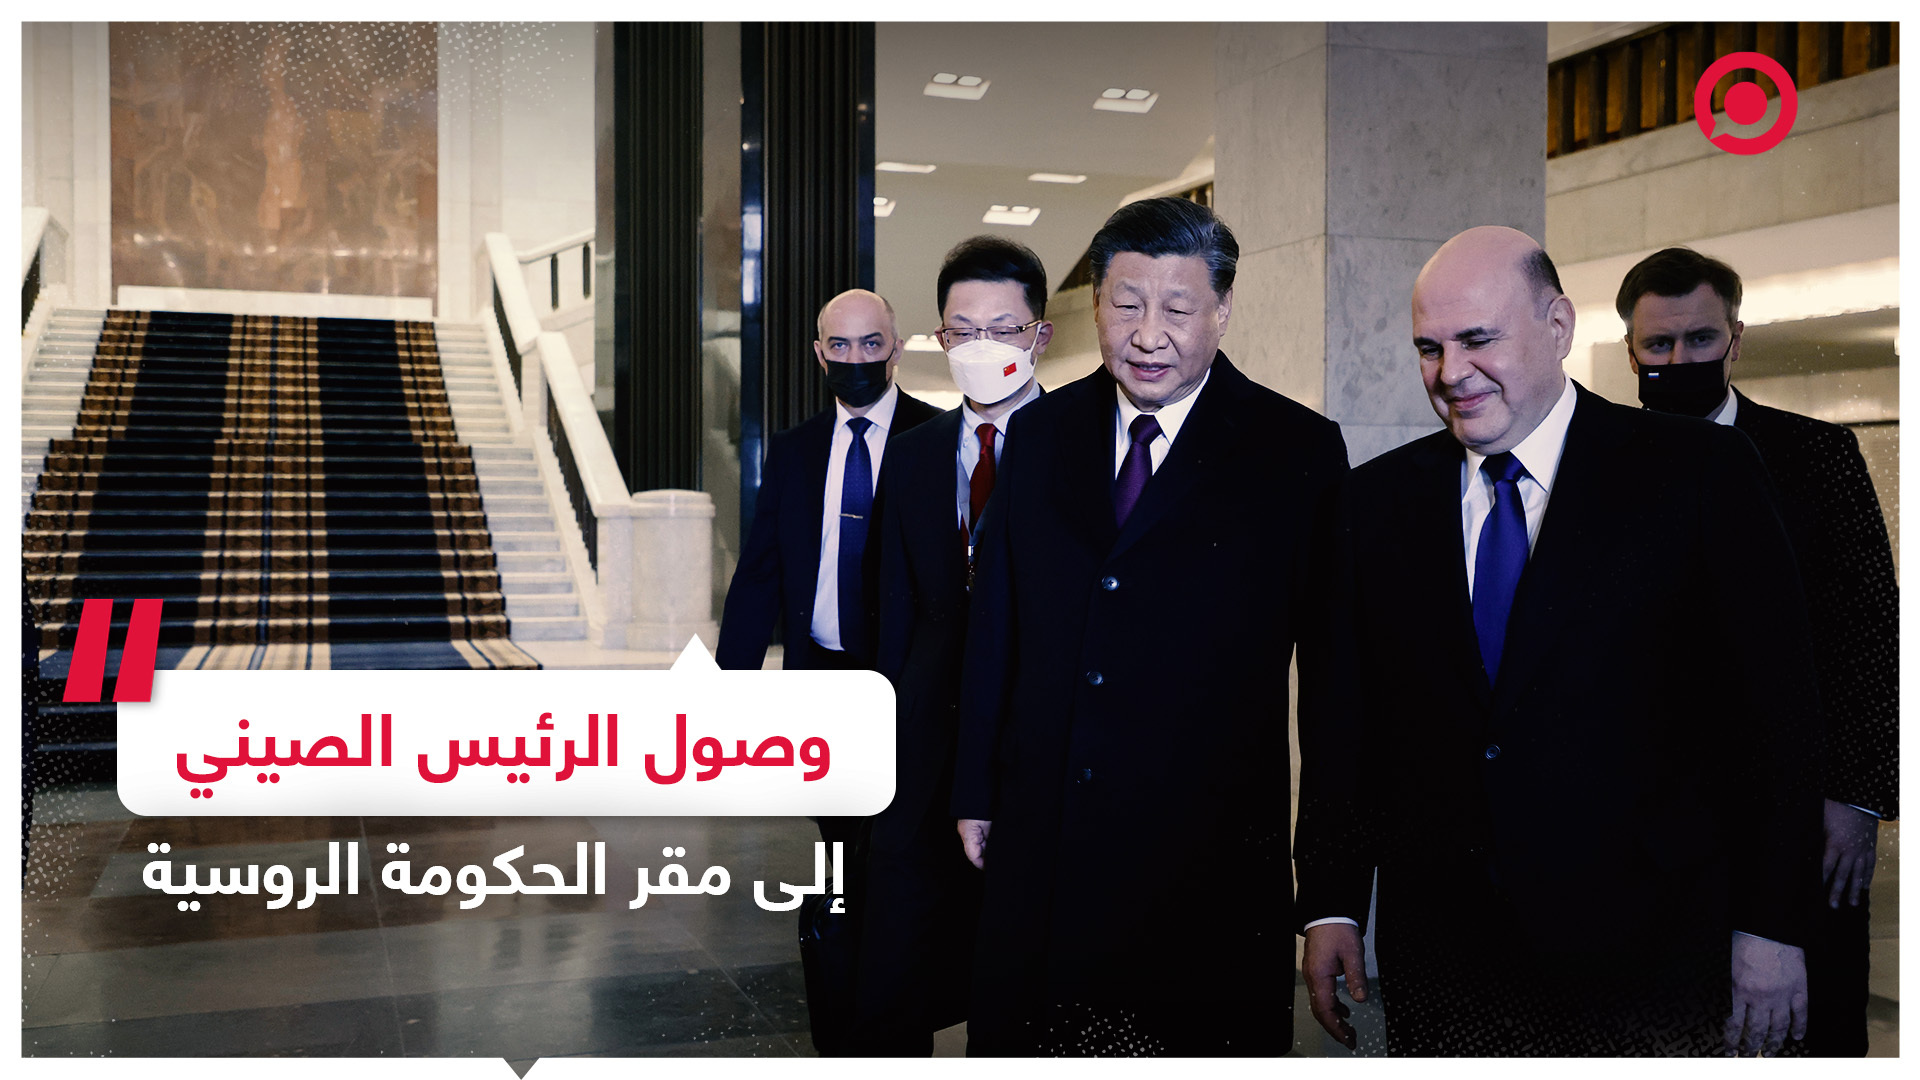 وصول الرئيس الصيني إلى مقر الحكومة الروسية في موسكو